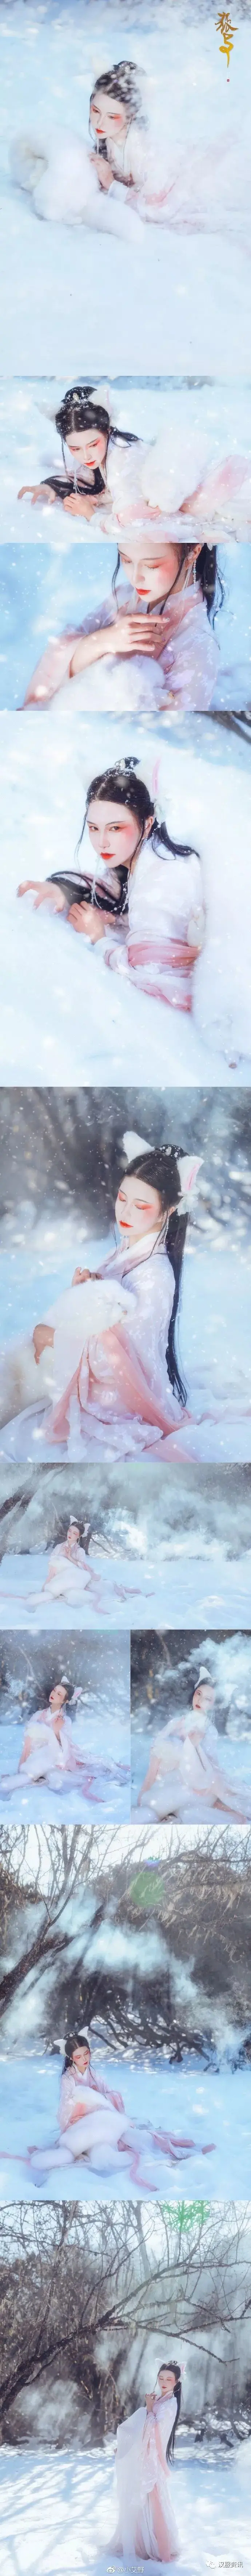 雪地中的白狐汉服美女插图